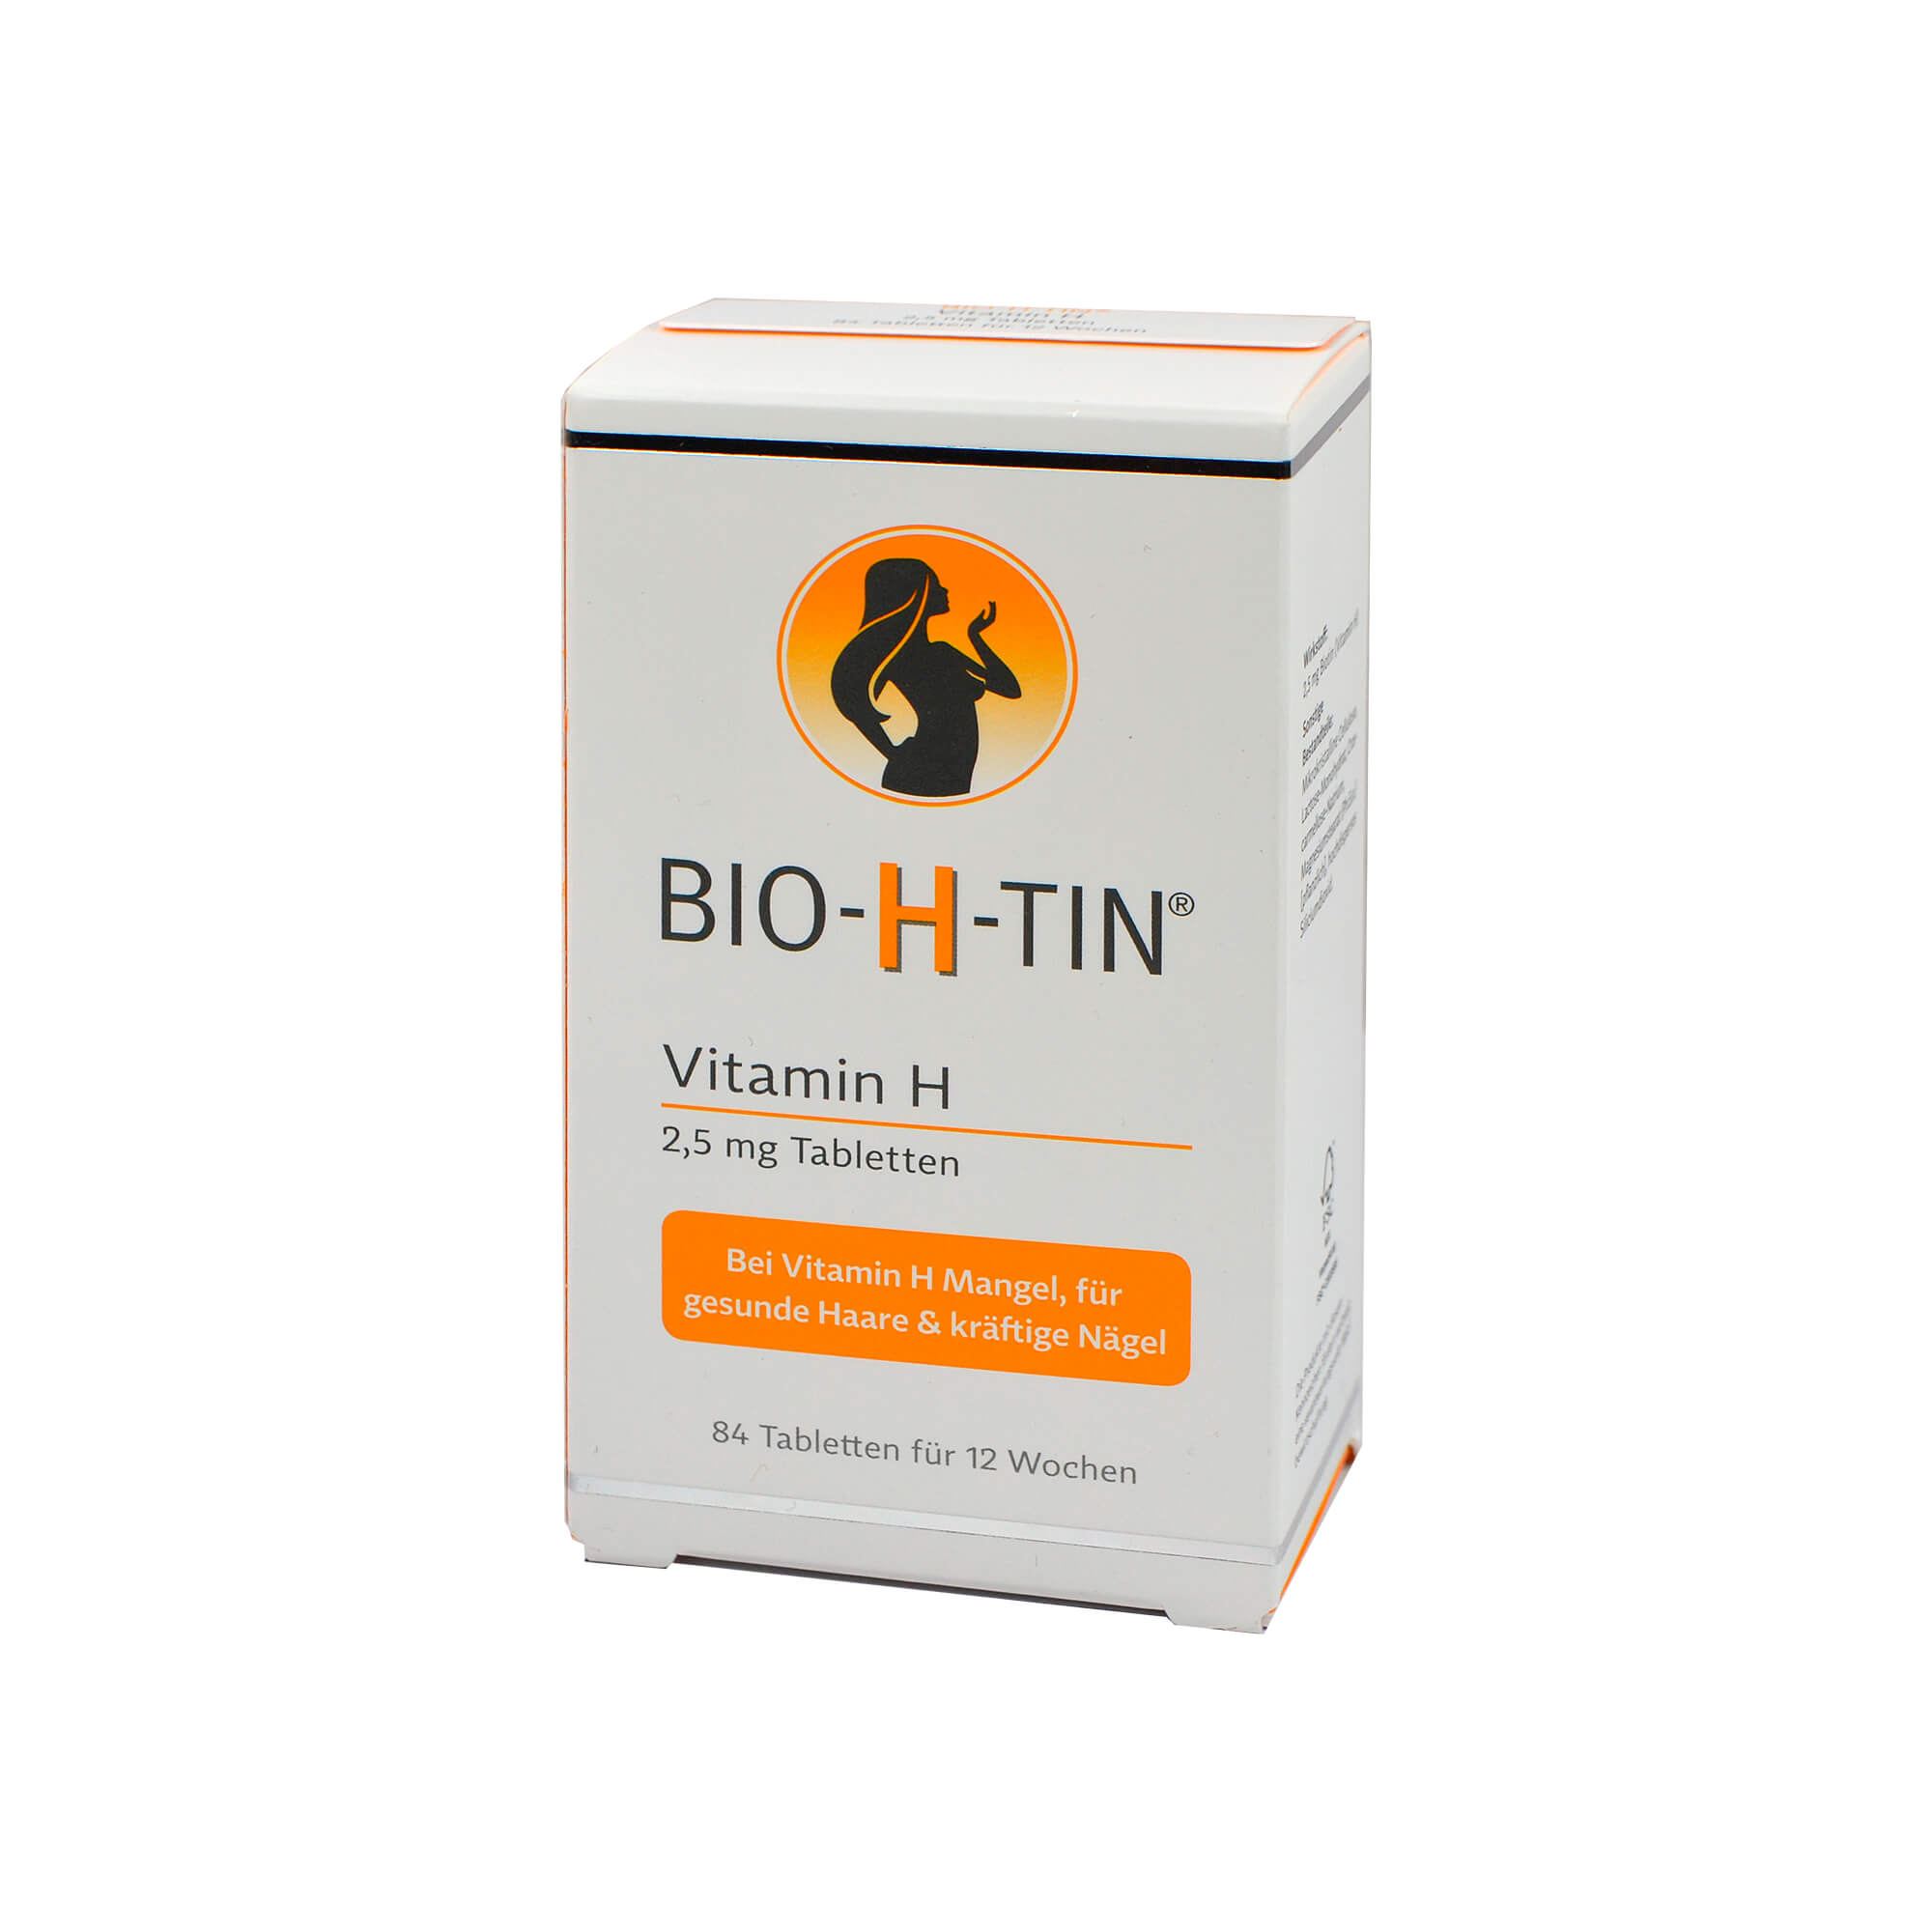 zur Vorbeugung und Behandlung eines Biotin-Mangels.